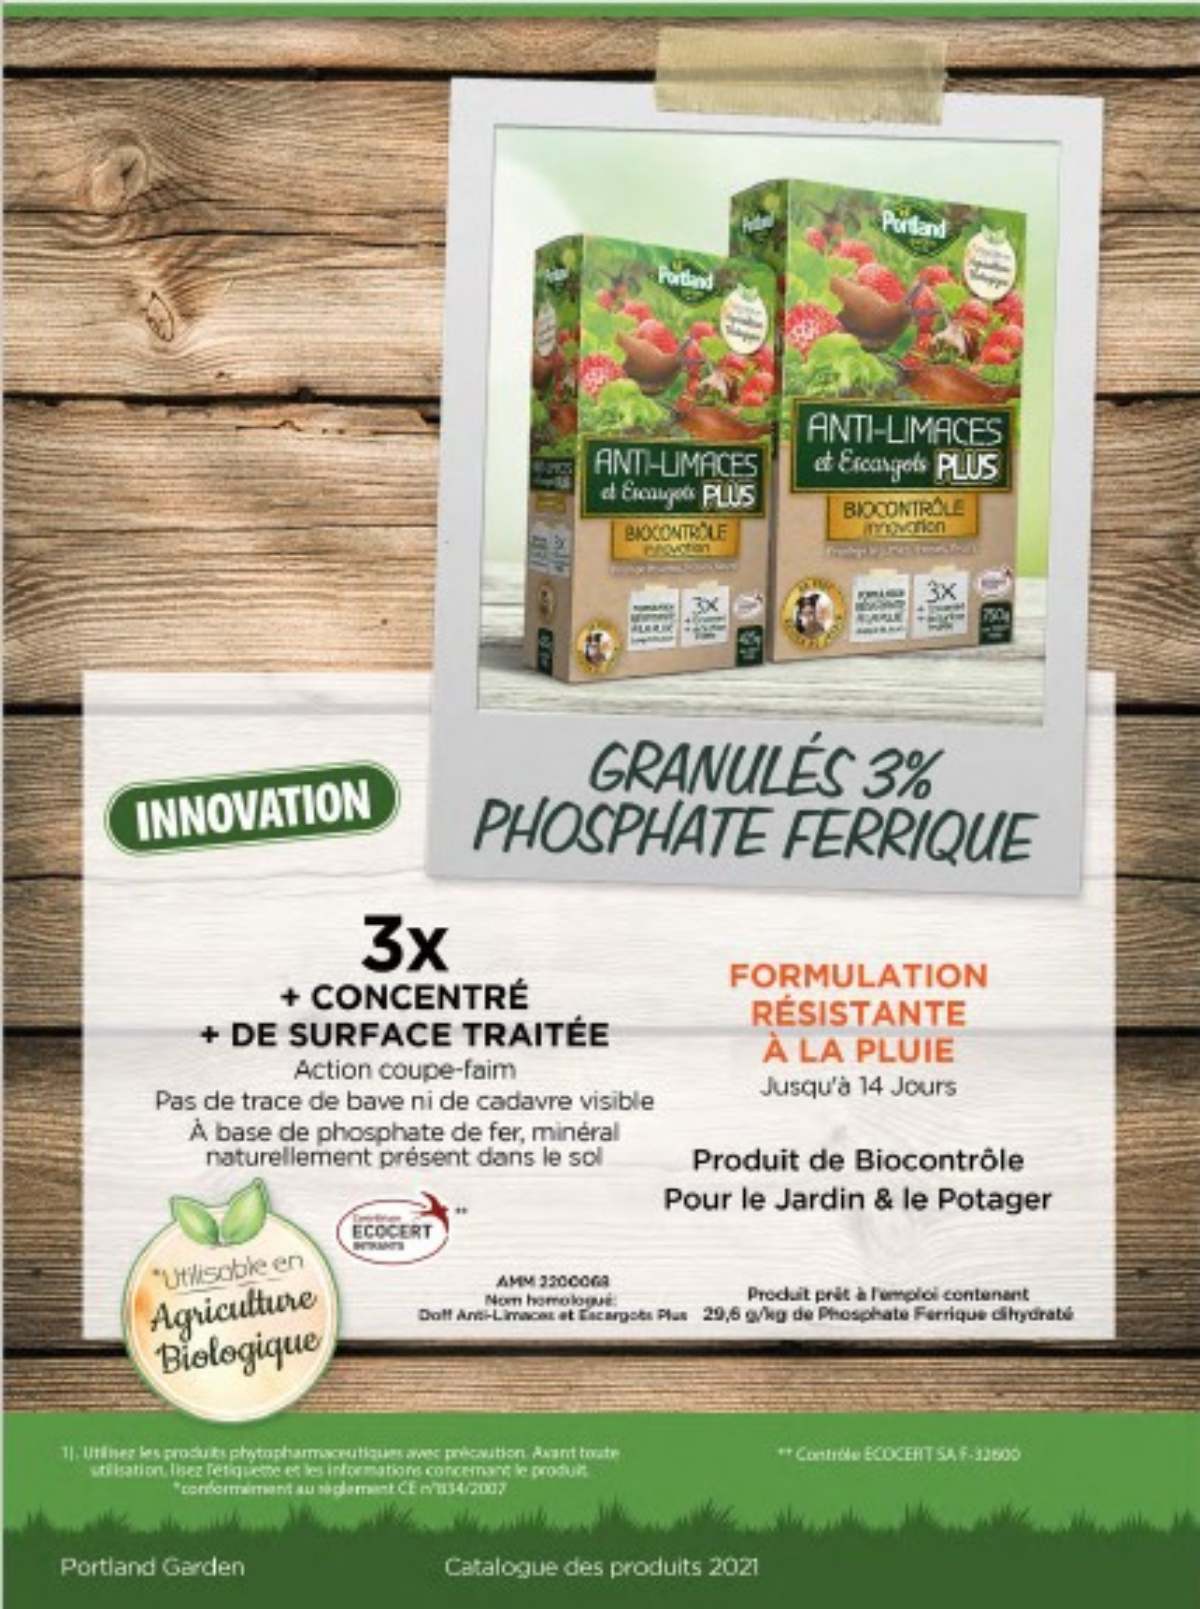 Portland Progresse En France Avec Son Innovation : L'Anti-Limaces Biocontrôle Granulés 3% Le Plus Concentré Du Marché